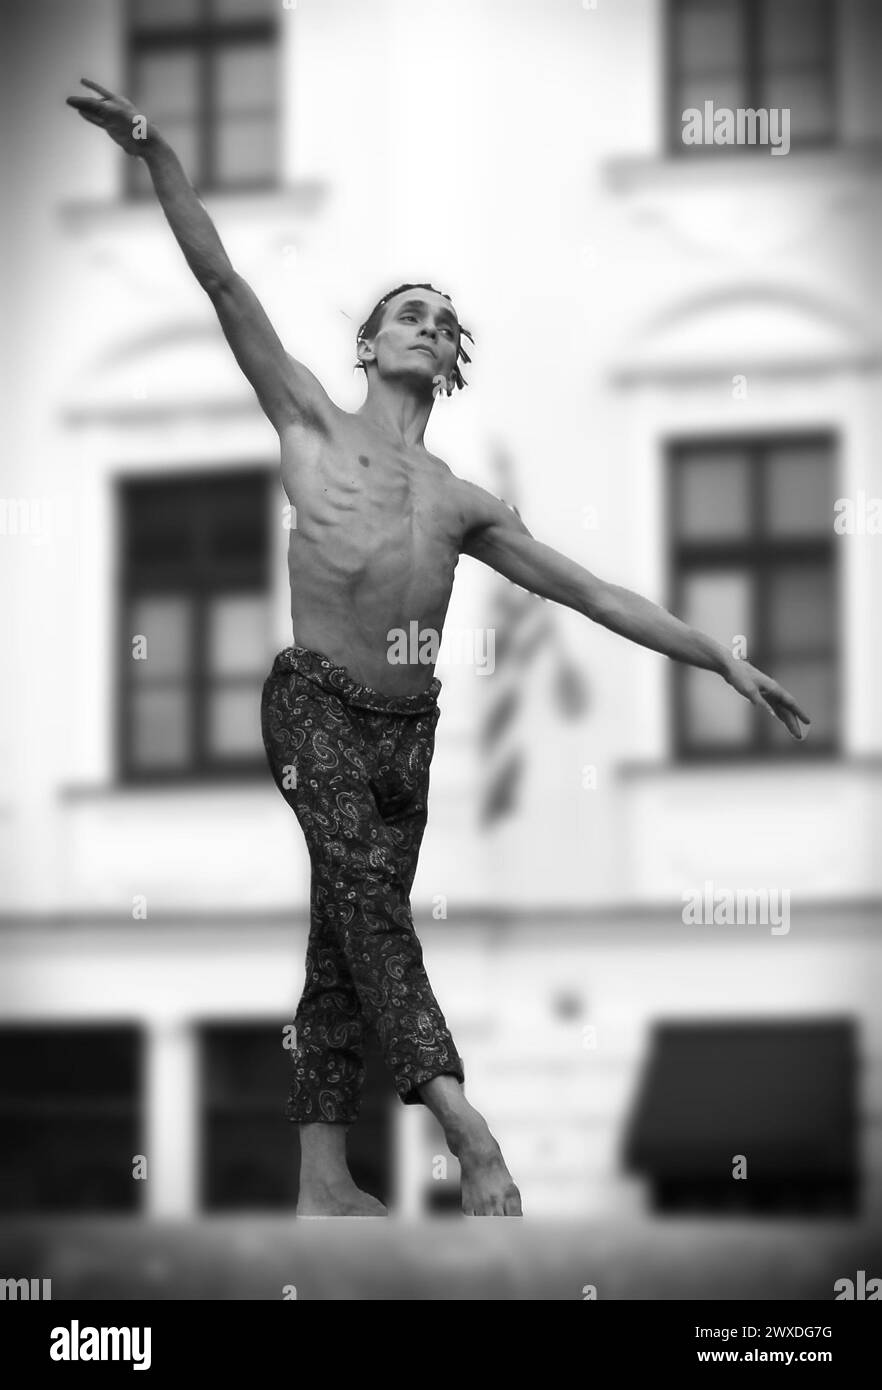 Street artist - a ballet dancer dancing on a fountain rim Stock Photo